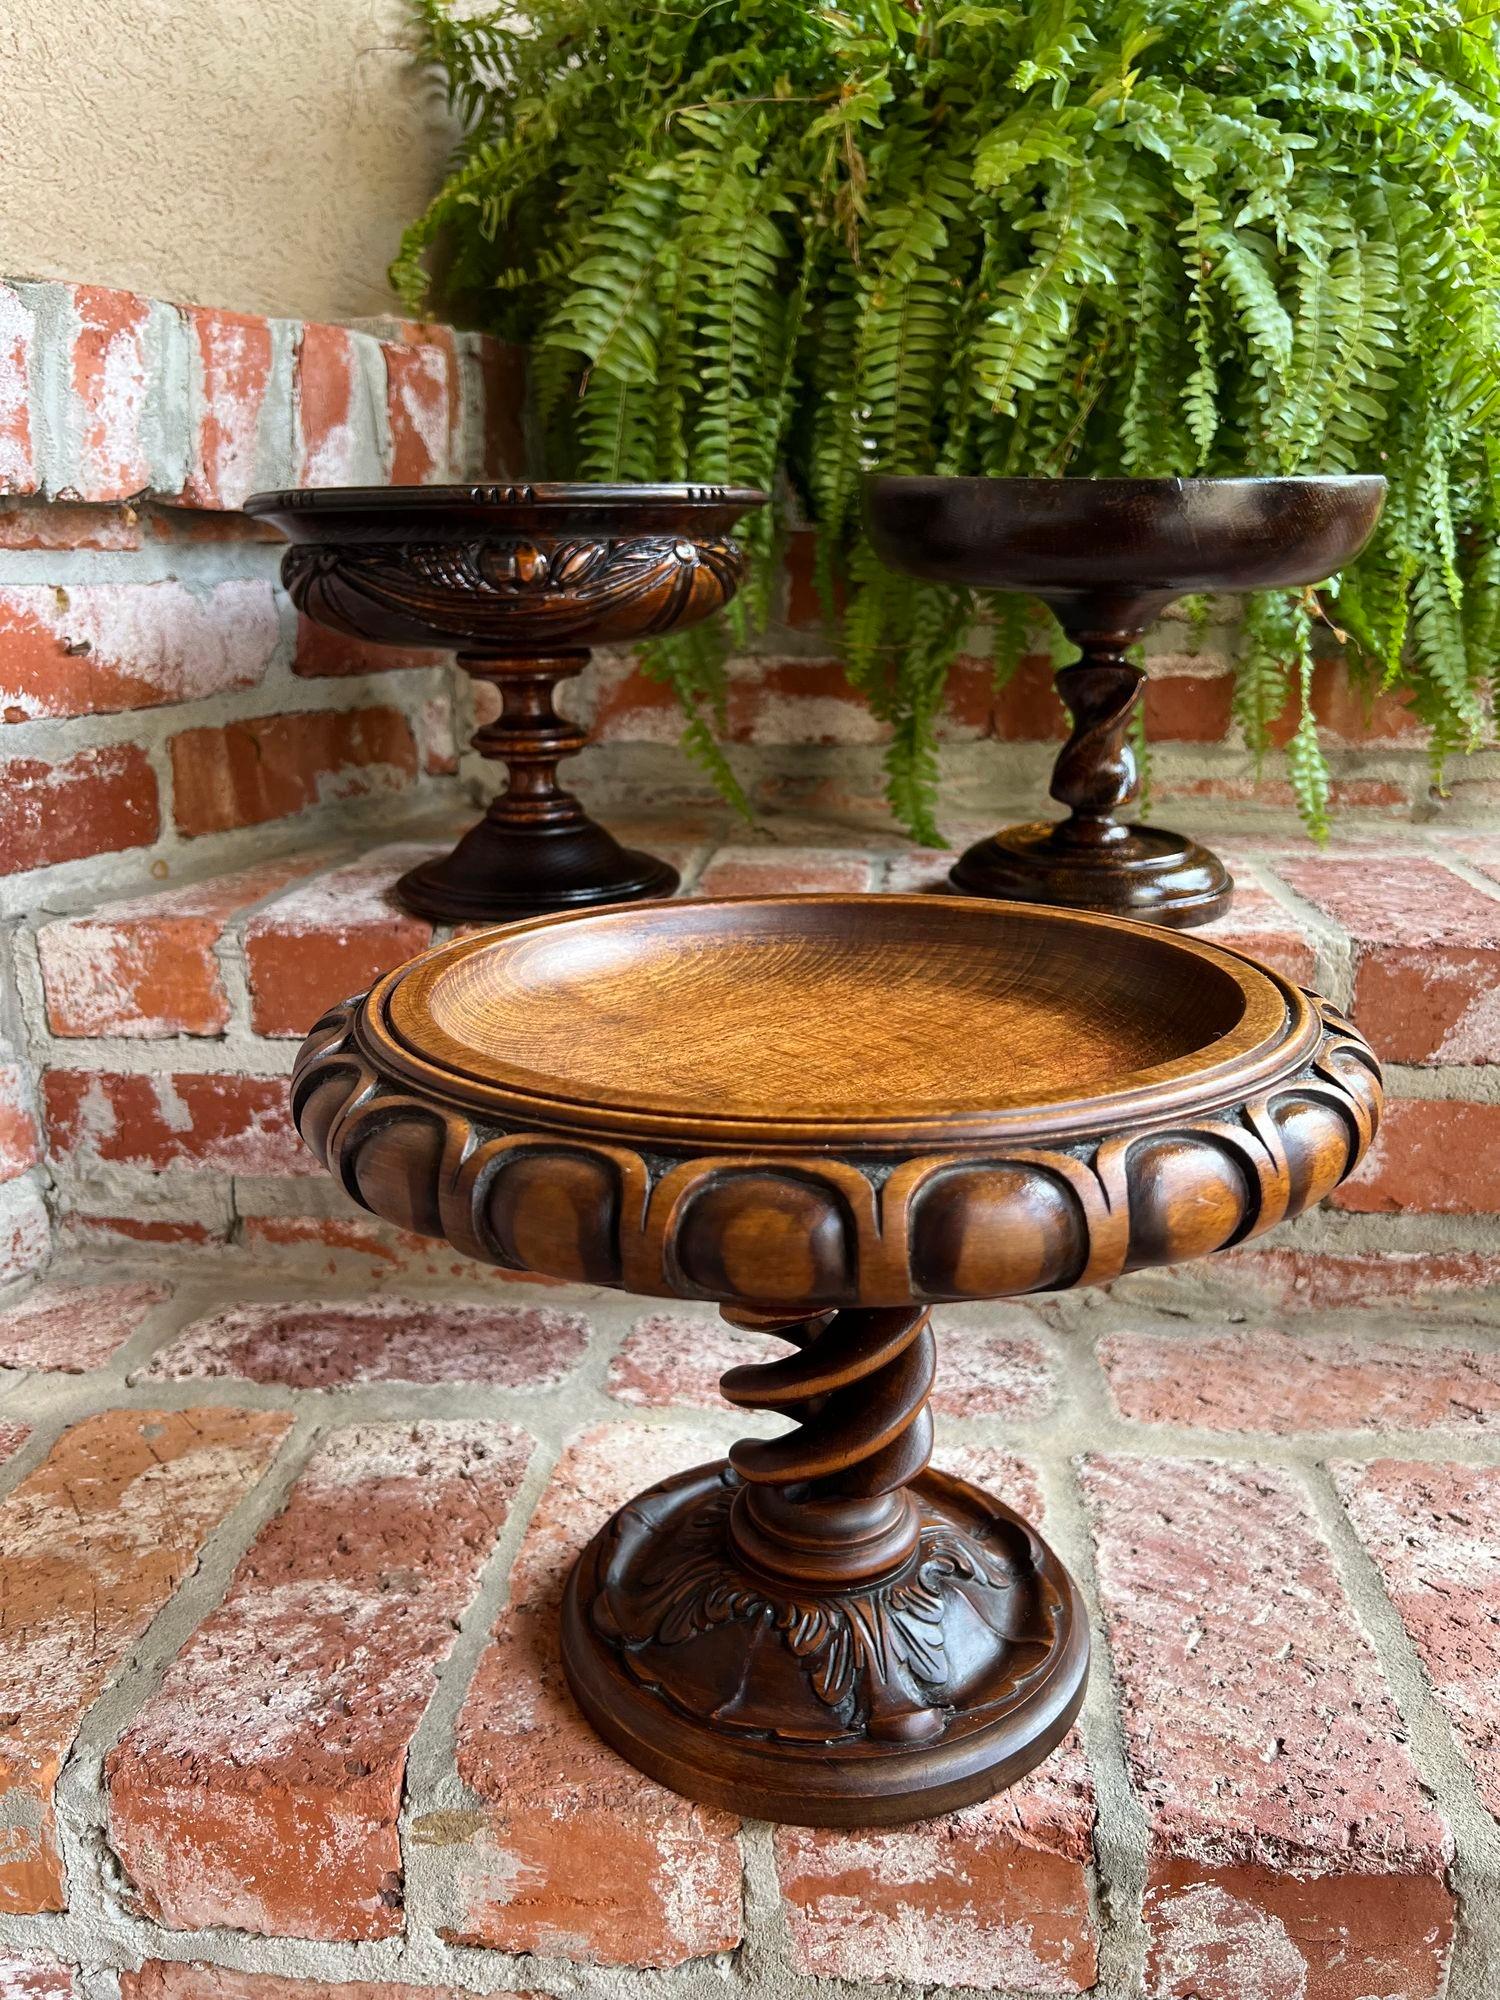 Carved Antique English Oak OPEN Barley Twist Compote Pedestal Bowl Floral Dessert Stand For Sale